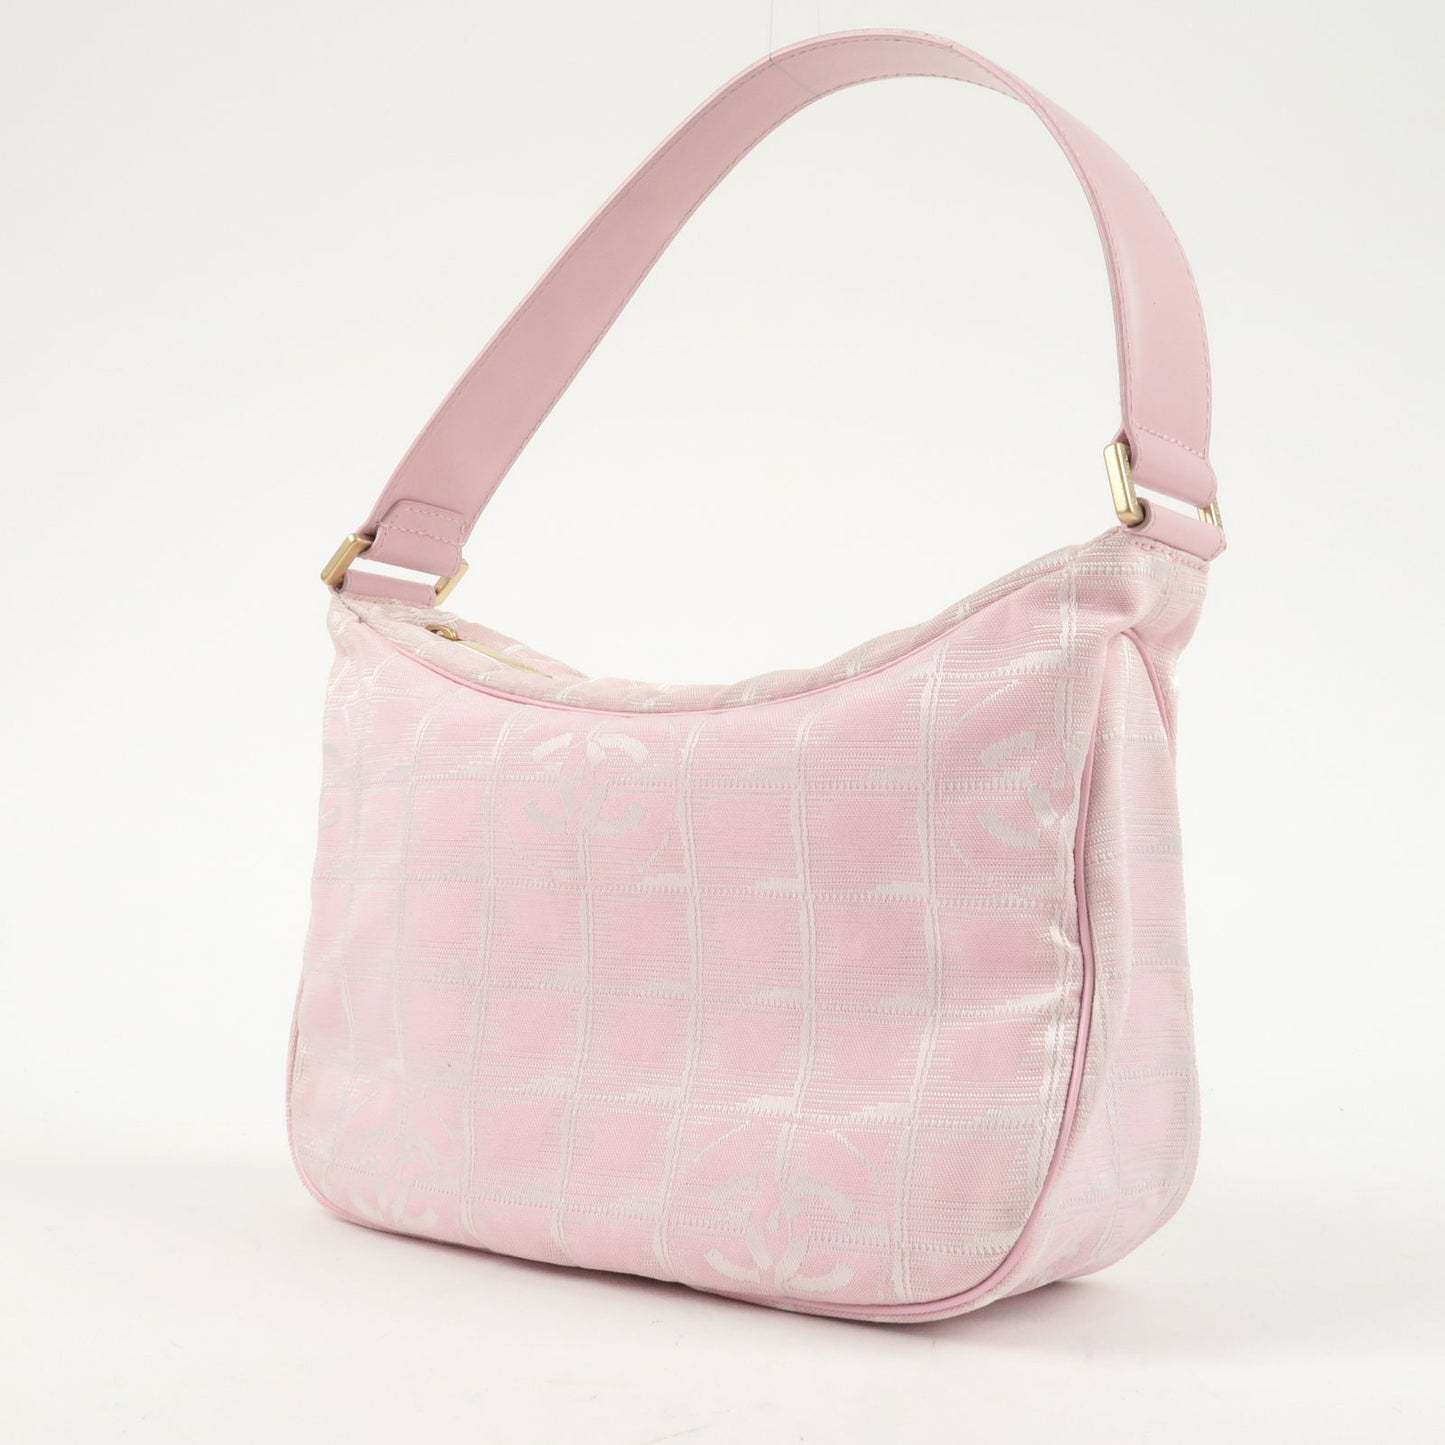 CHANEL Used Shoulder Bag Camellia Pink Leather France Vintage Auth #AH387 W